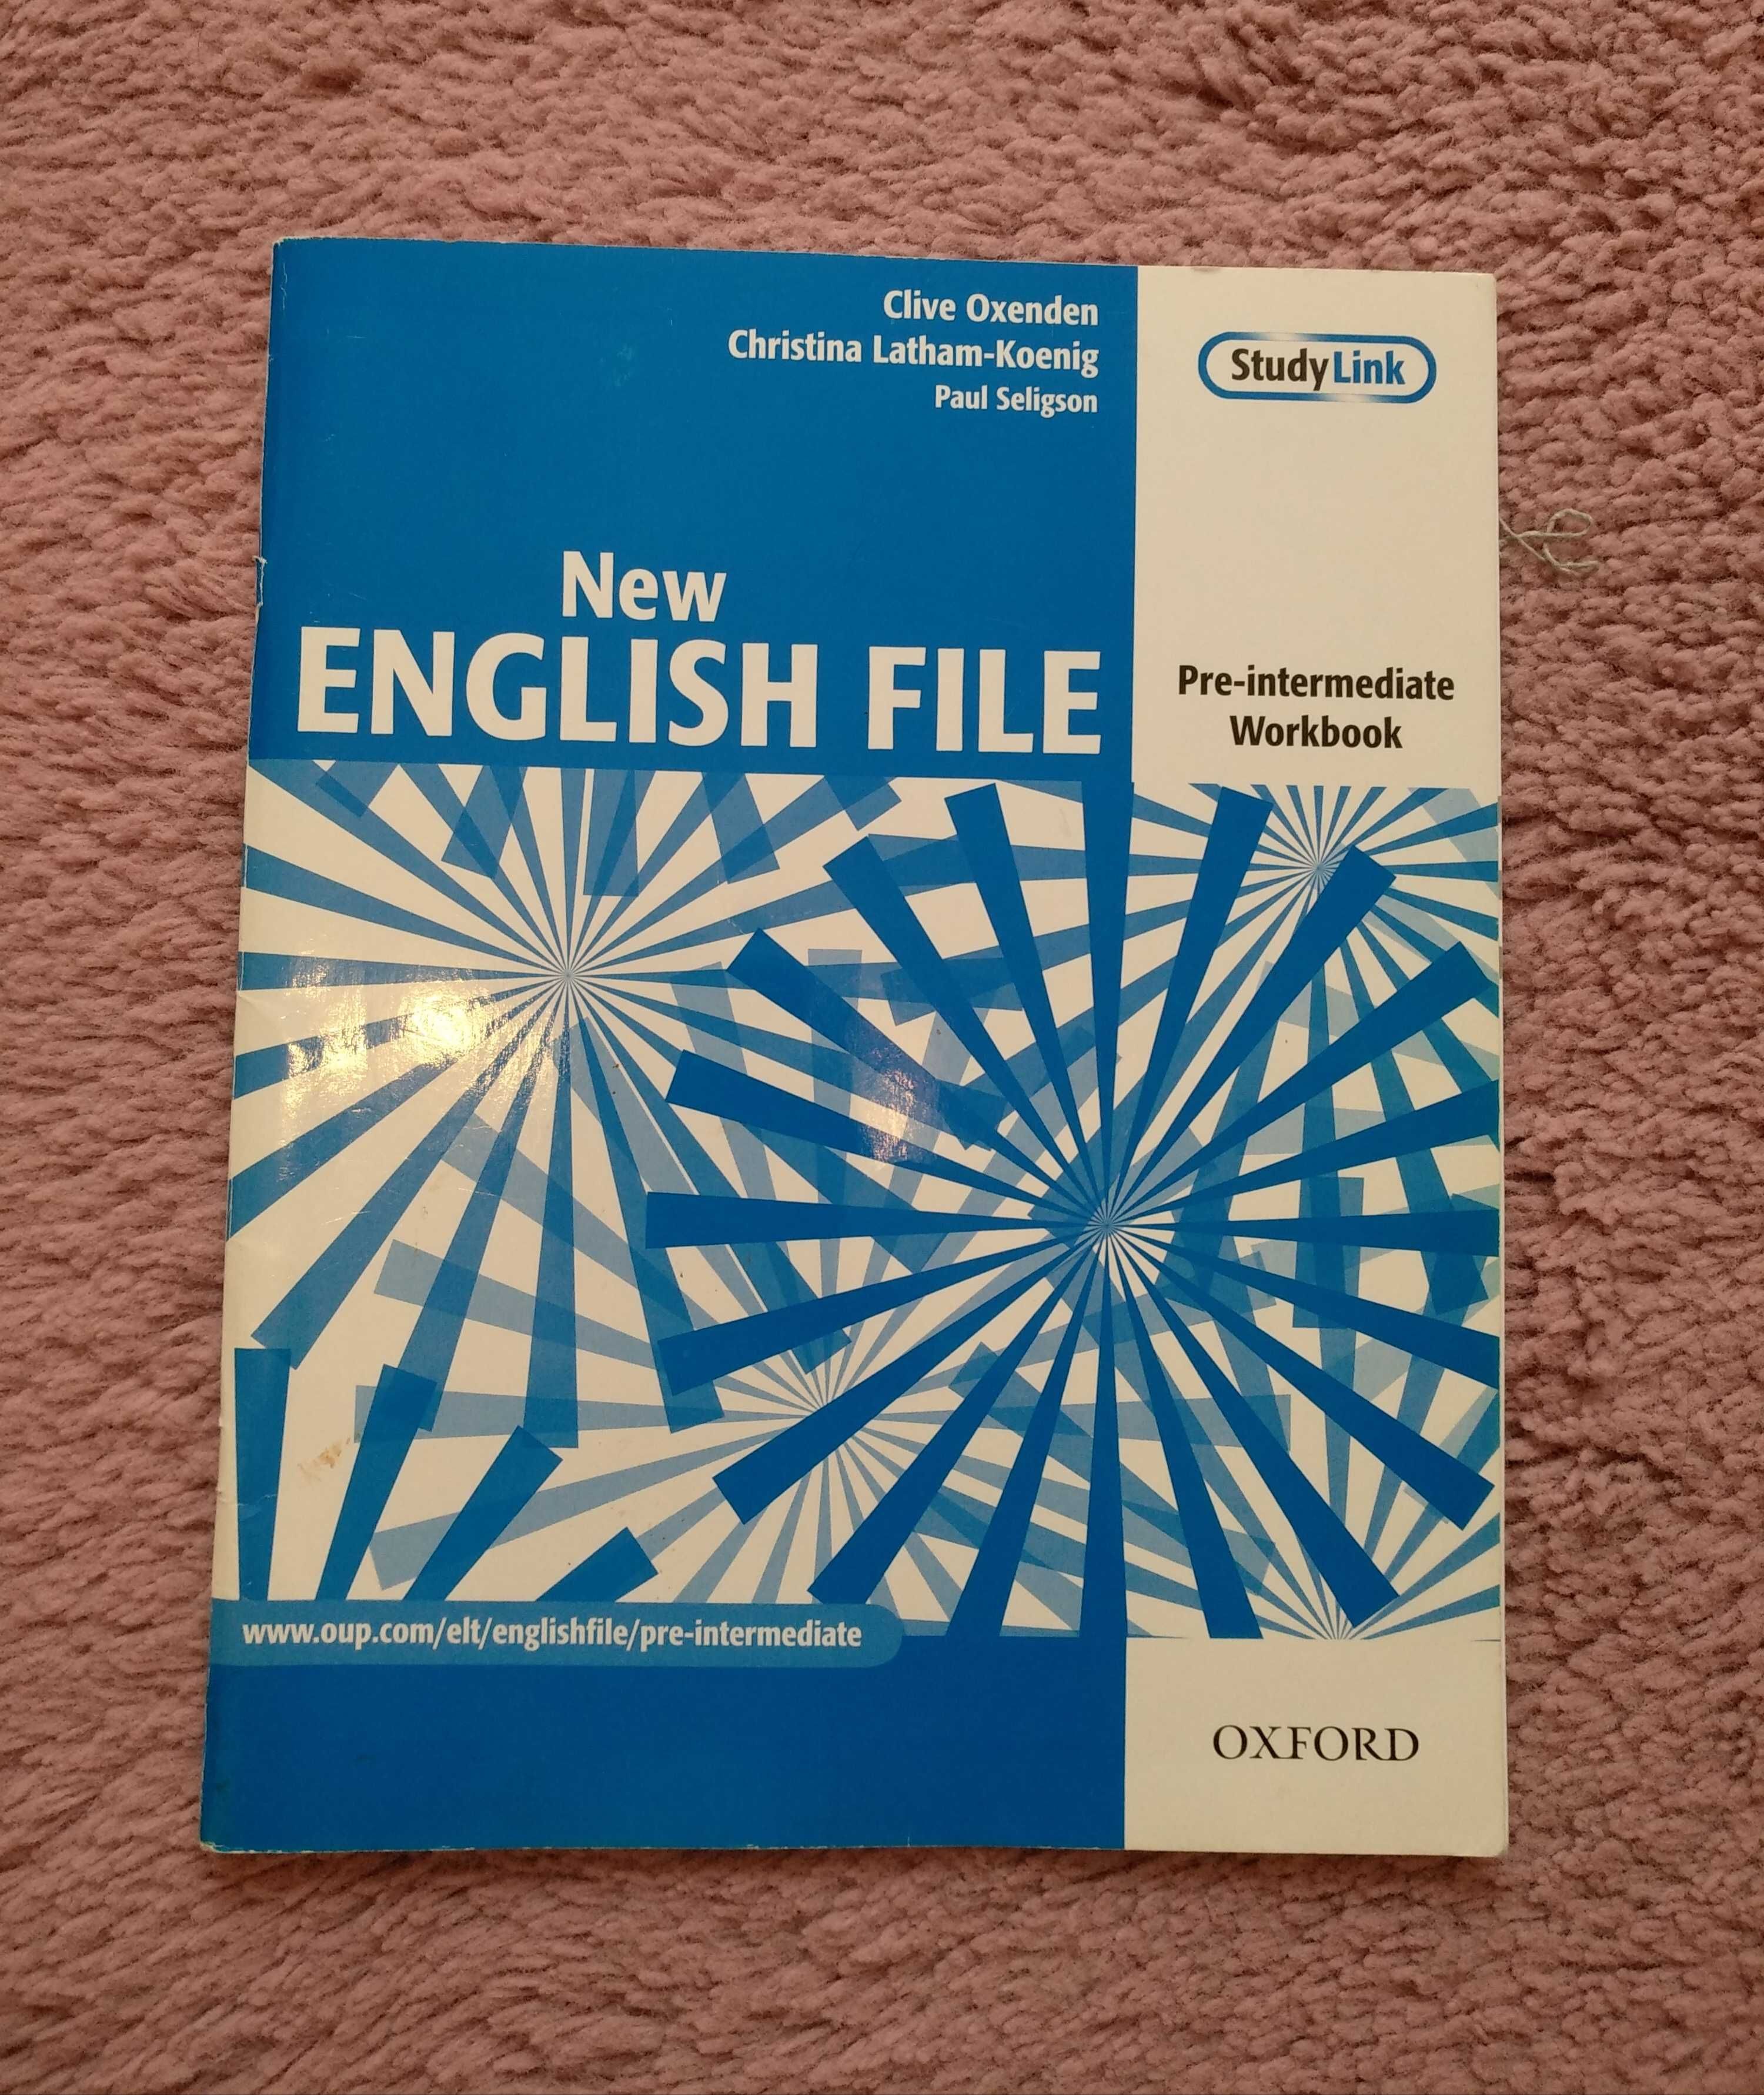 New English File Pre-intermediate książka płyta uzupełnione ćwiczenia